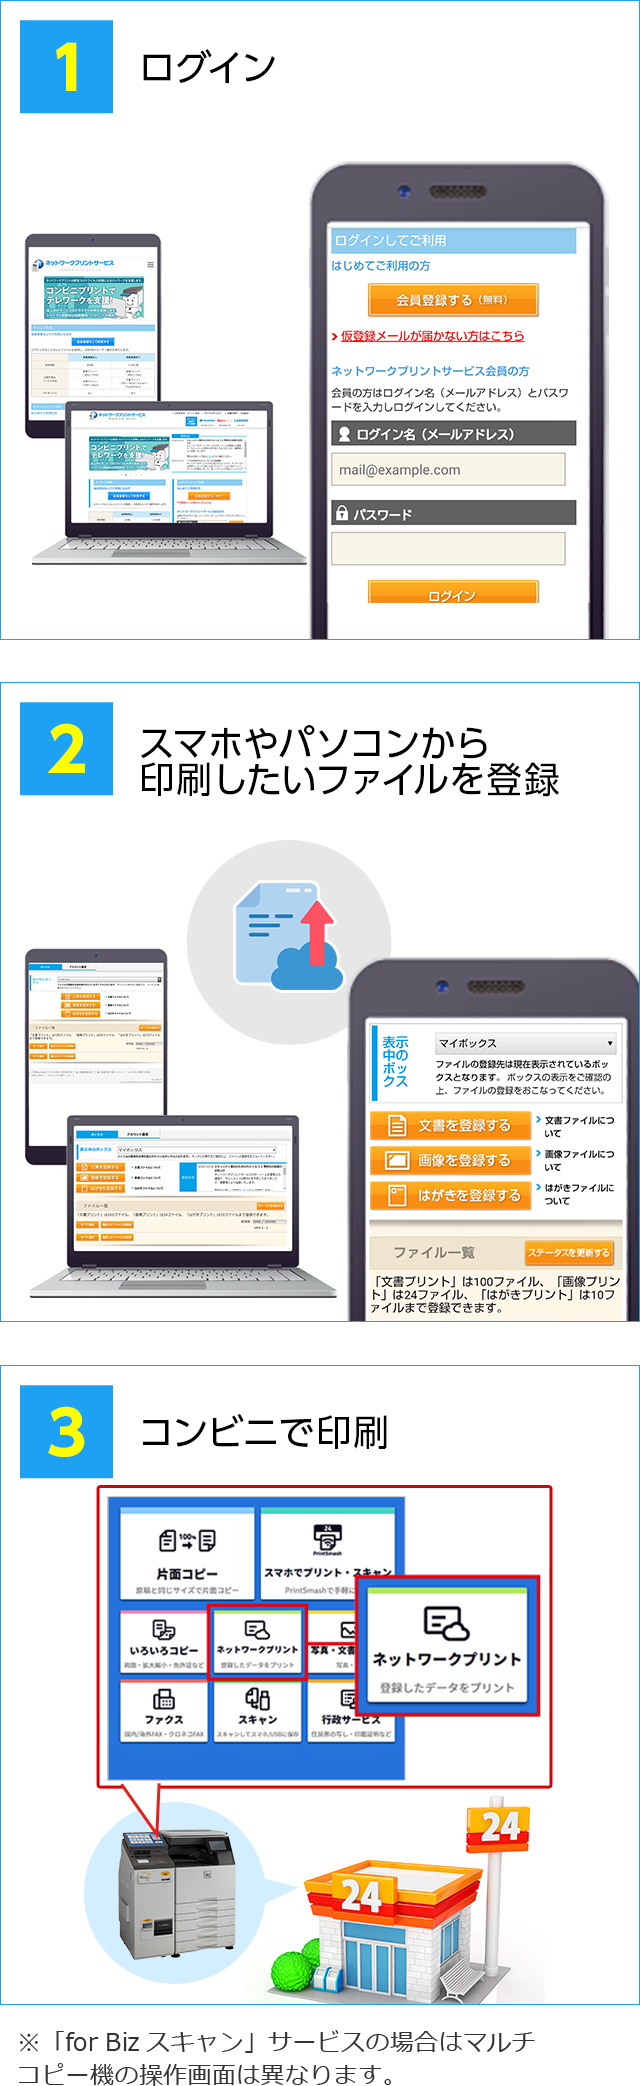 ネットワークプリントの法人向けサービス シャープマーケティングジャパン